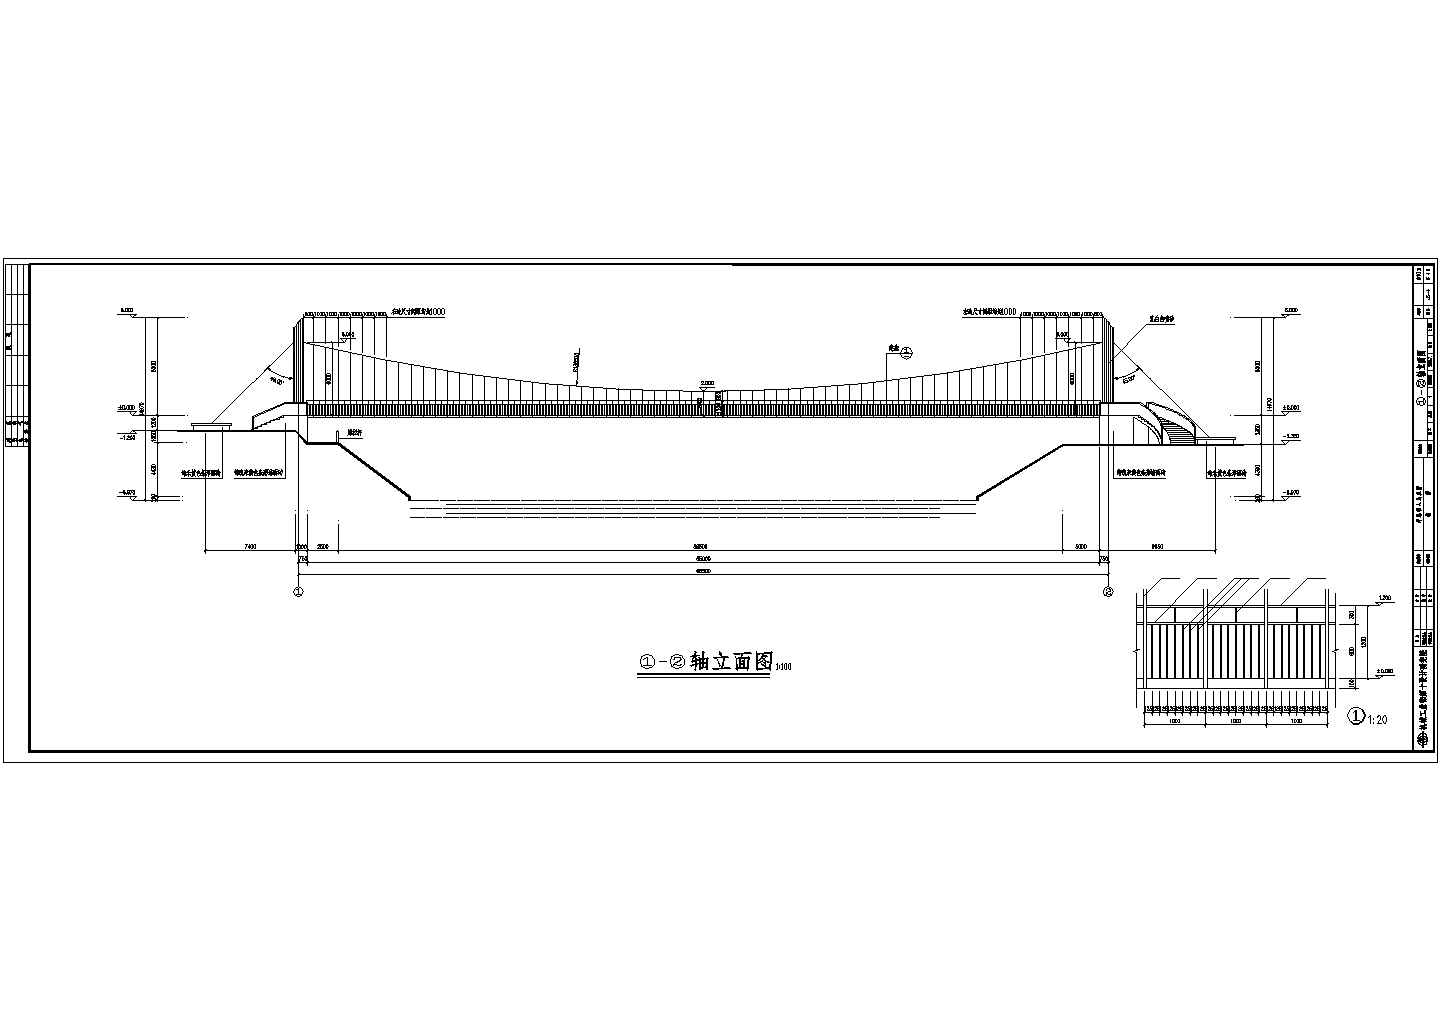 深圳坪地镇铁桥66m人行悬索桥铁桥CAD钢结构设计图纸完整